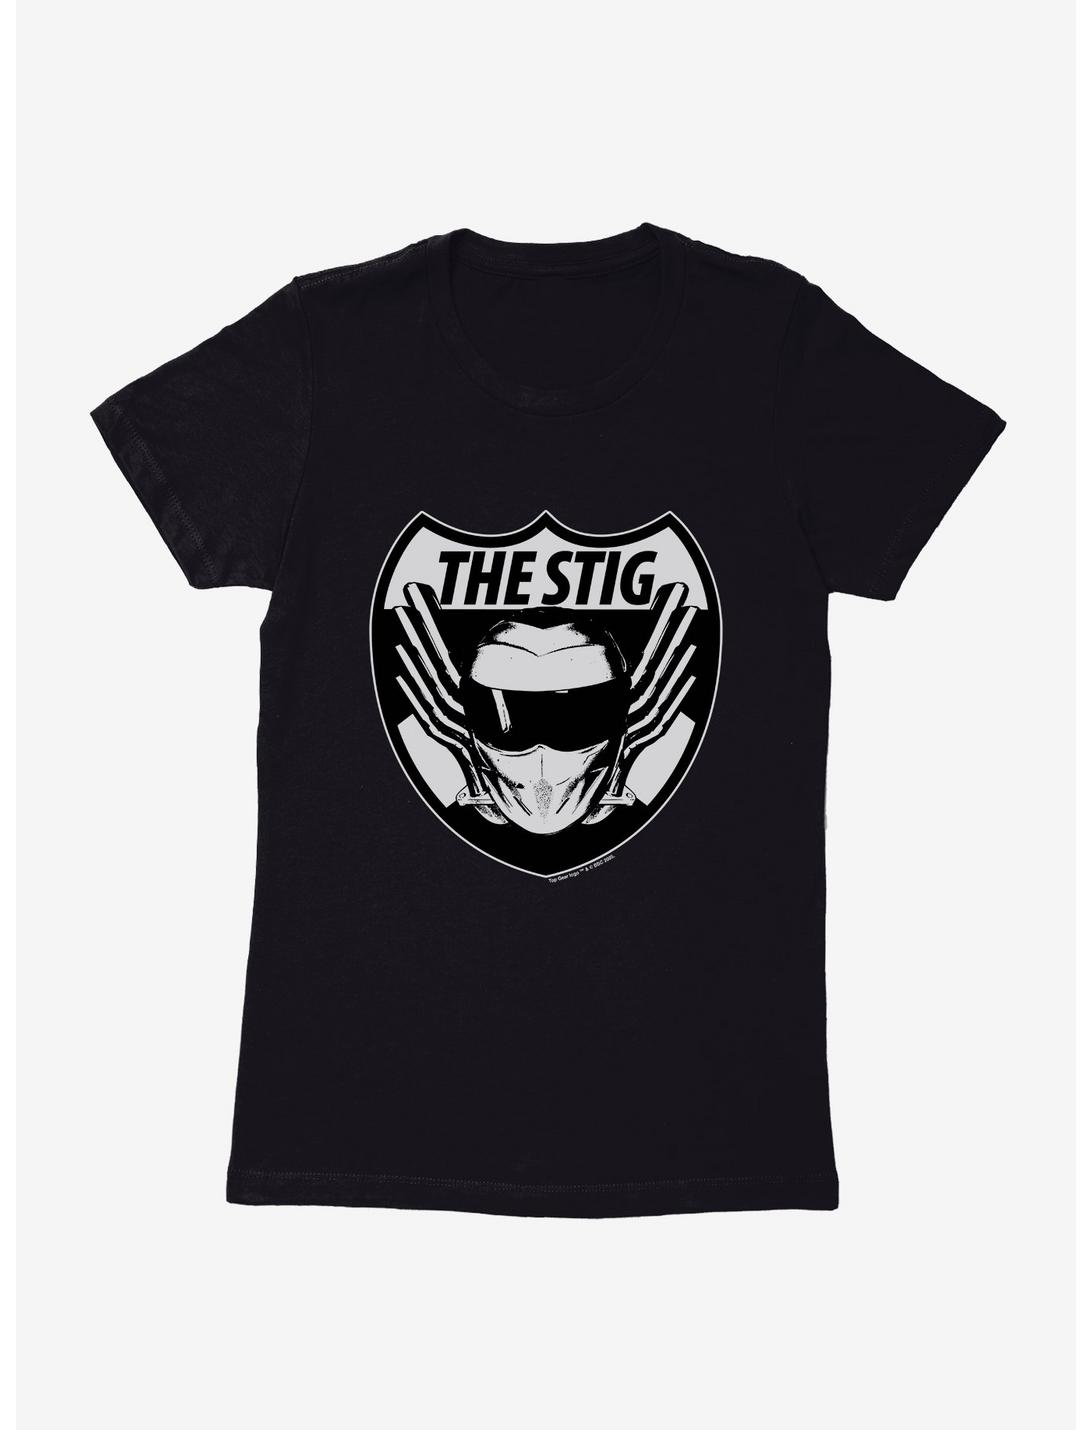 Top Gear The Stig Womens T-Shirt, , hi-res